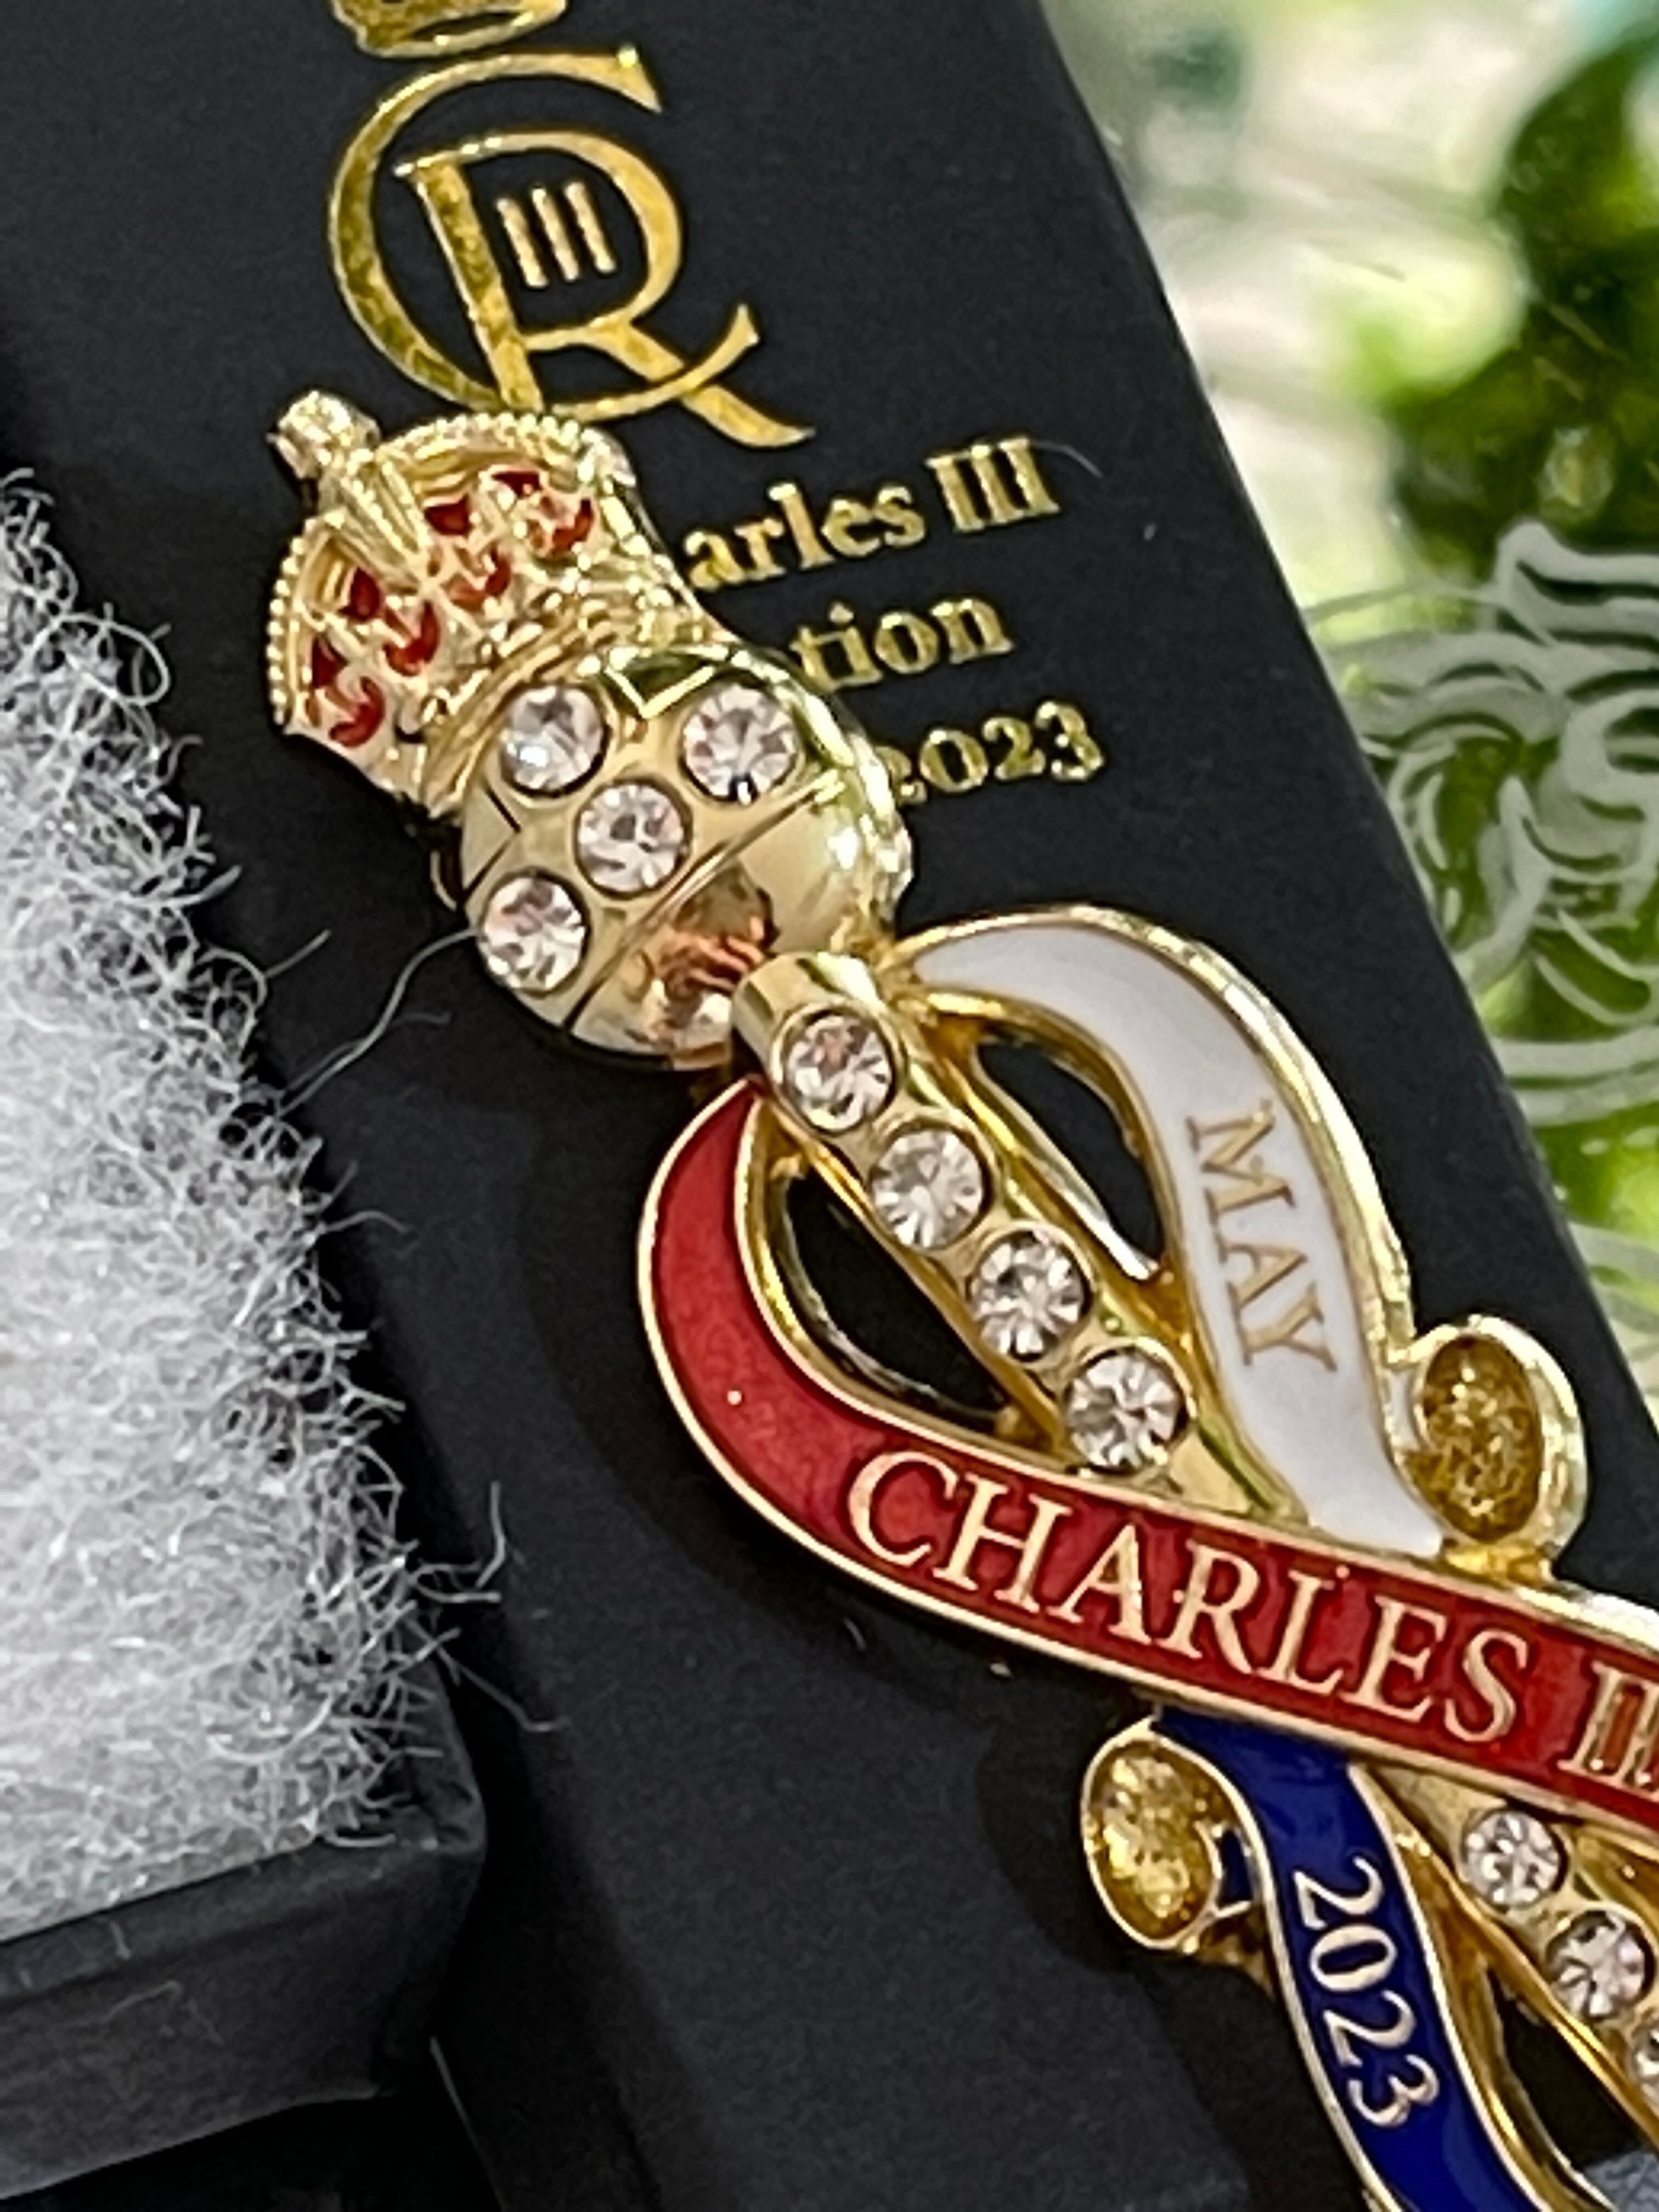 『チャールズ国王』即位記念 ピンバッジ King Charles III Coronation Commemorative Brooch